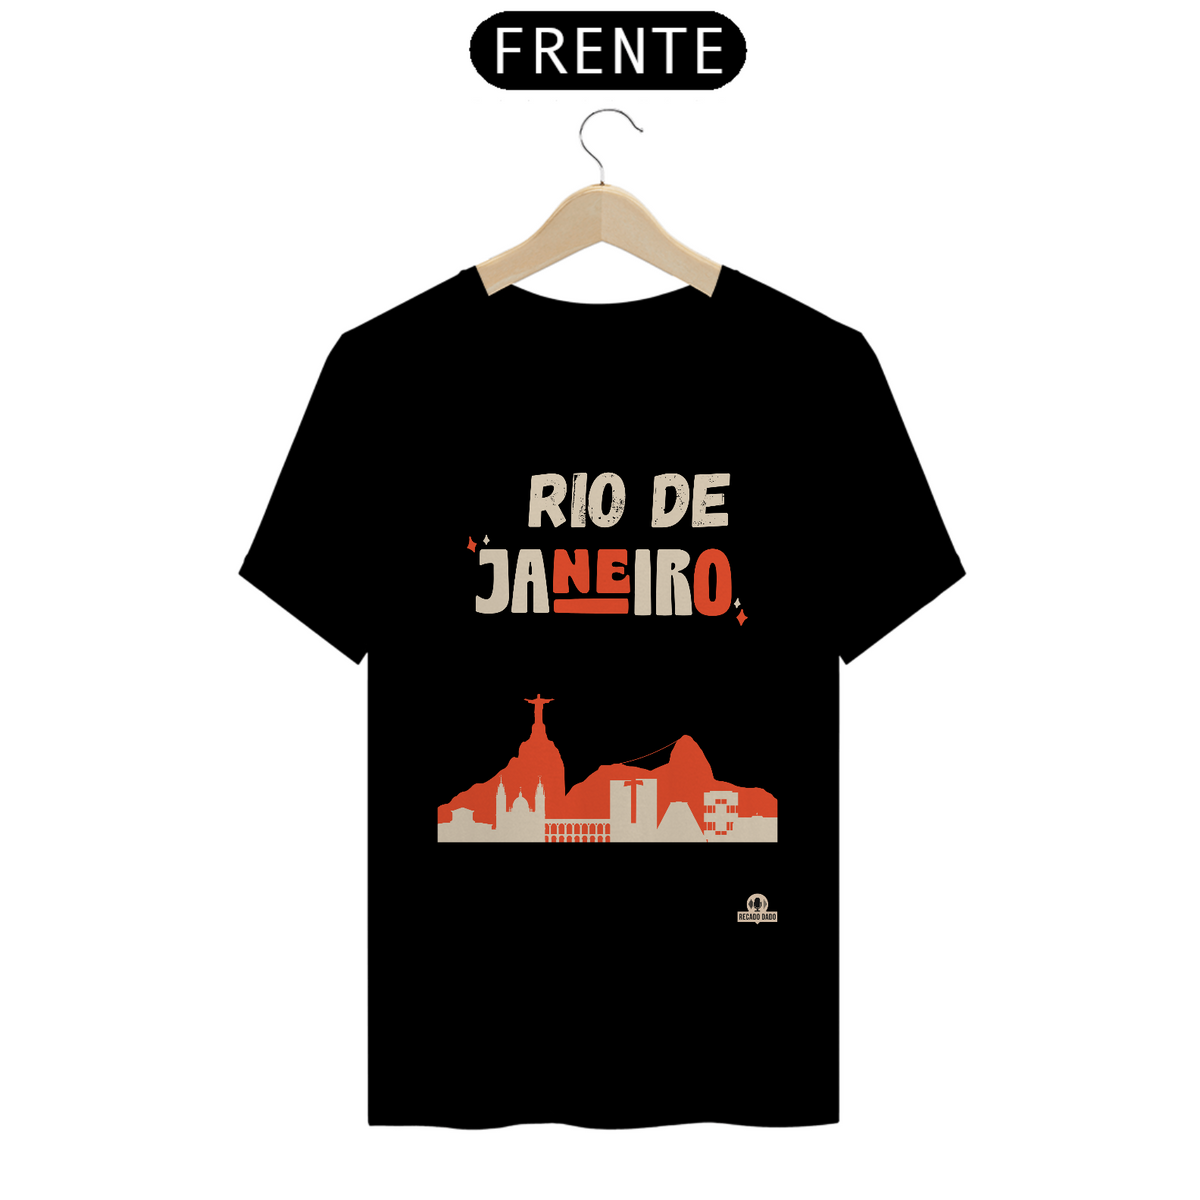 Nome do produto: Camiseta com linda silhueta do Rio de Janeiro, com as paisagens da cidade maravilhosa.